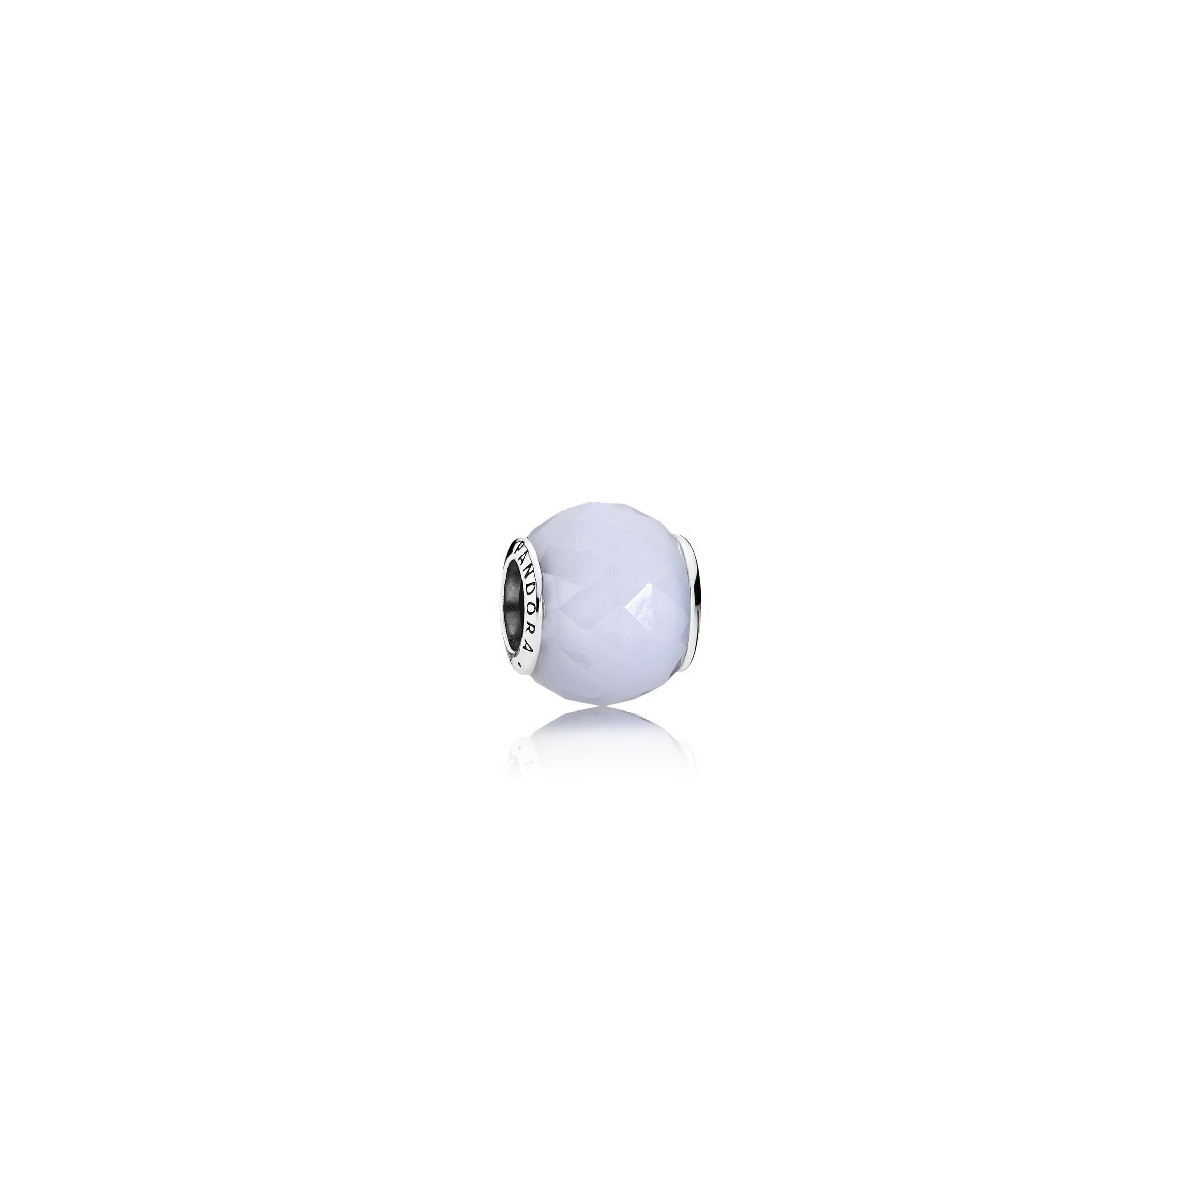 Abalorio Pandora plata 925 de cristal blanco